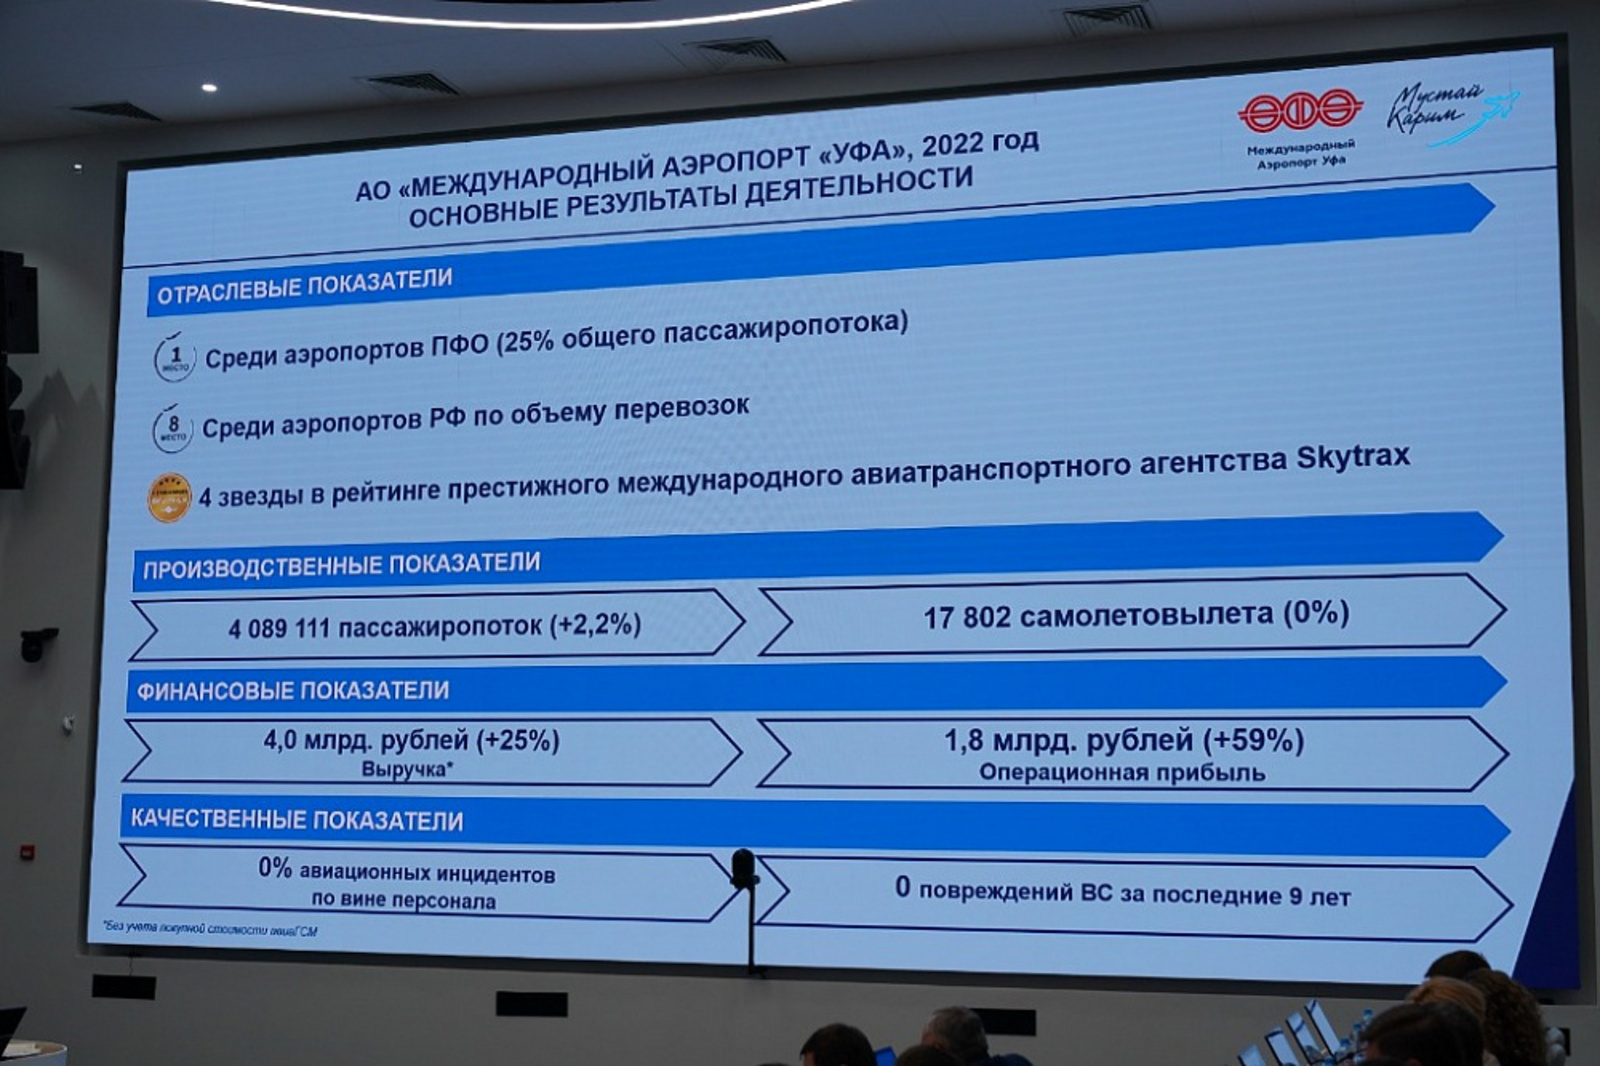 Международный аэропорт «Уфа» стал восьмым в России по объёму пассажиропотока